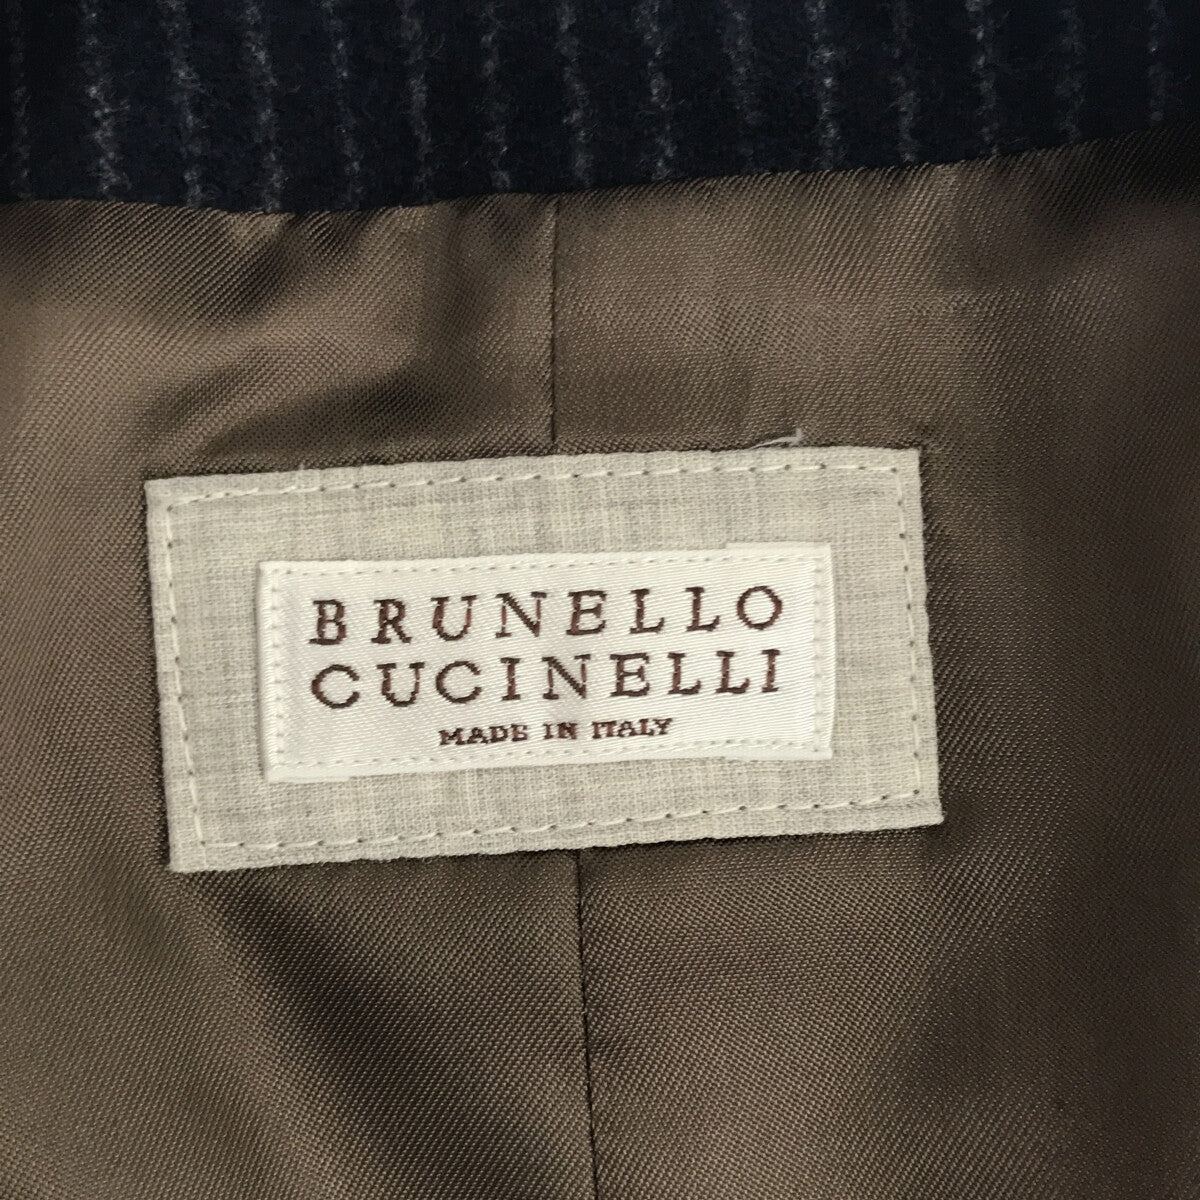 BRUNELLO CUCINELLI / ブルネロクチネリ | ウール ストライプ ベスト ジレ / 総裏地 | 46 | メンズ